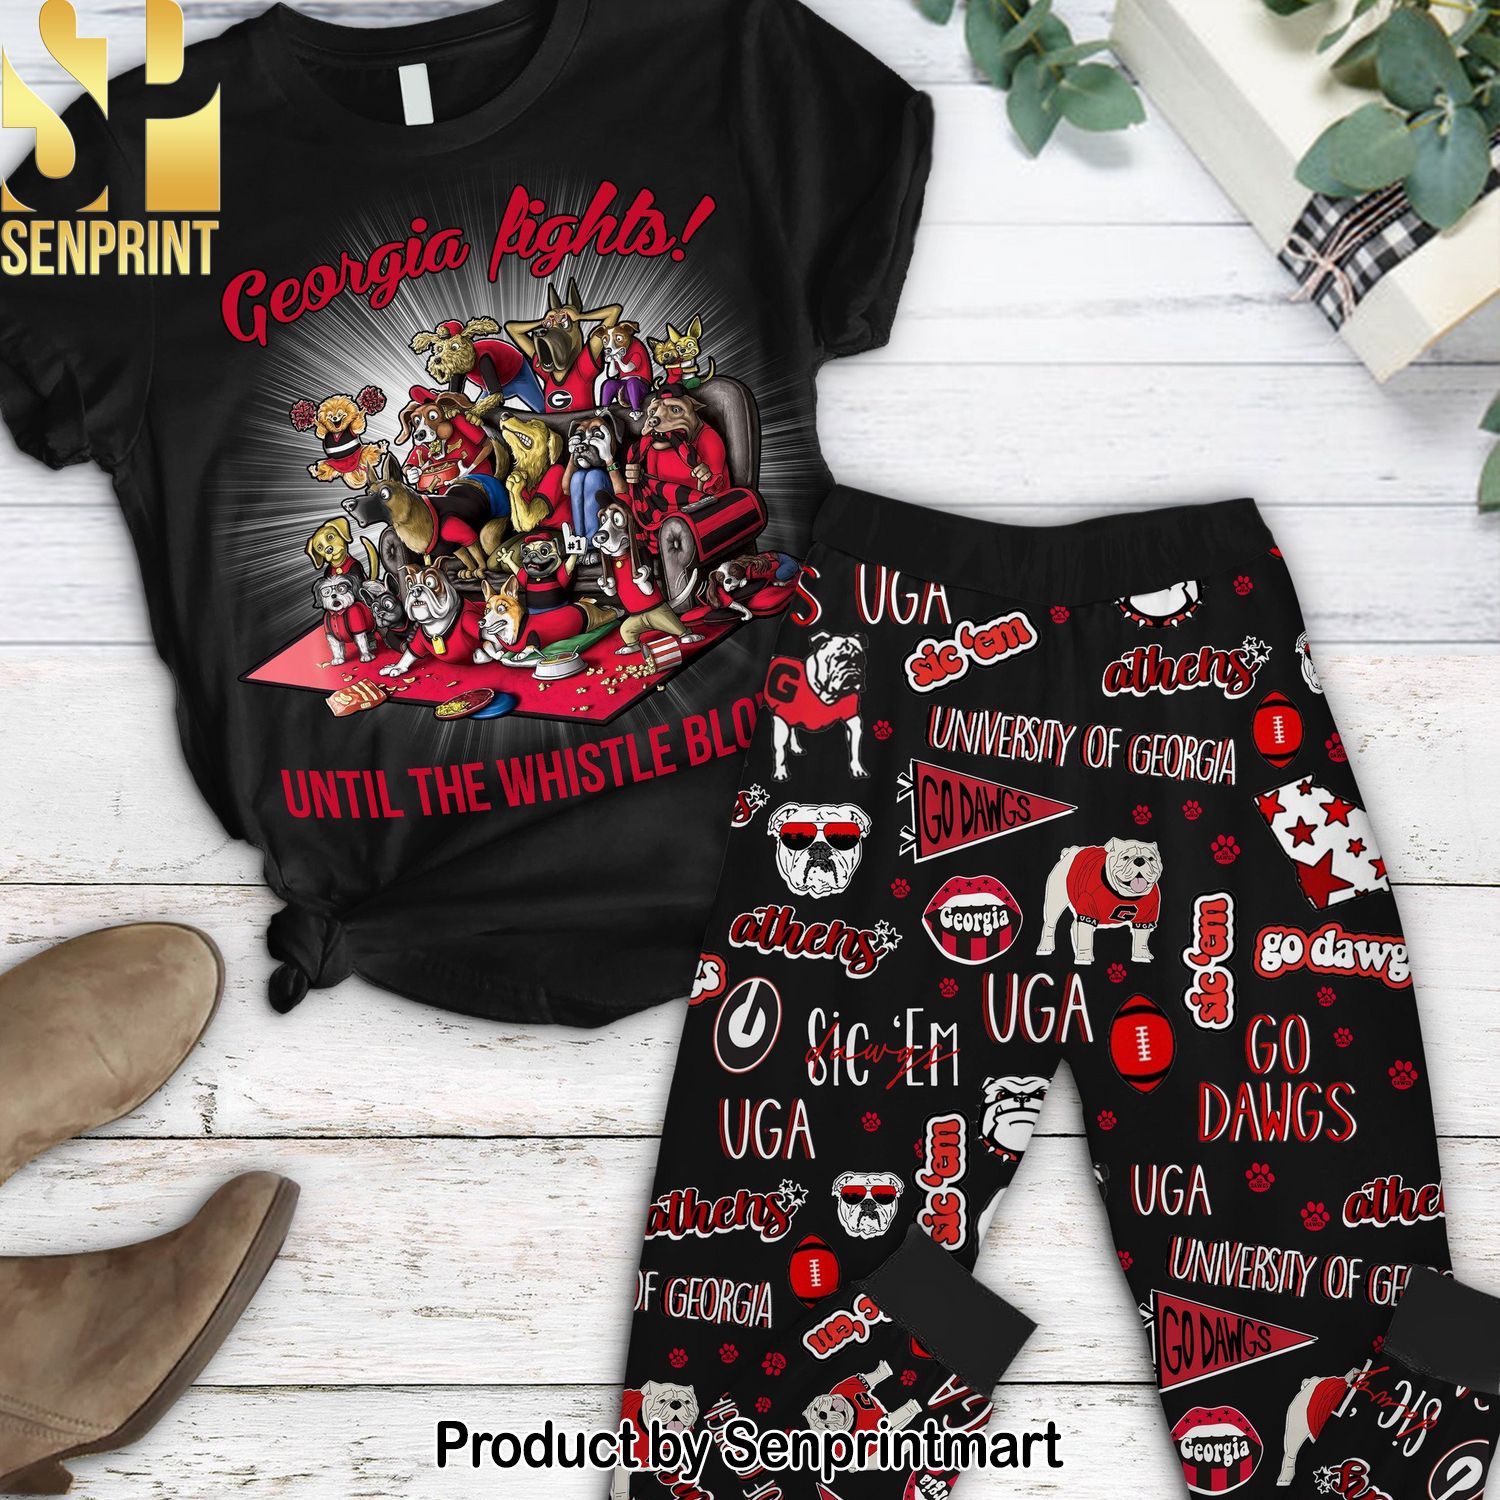 NCAA Georgia Bulldogs Gift Ideas All Over Print Pajama Sets